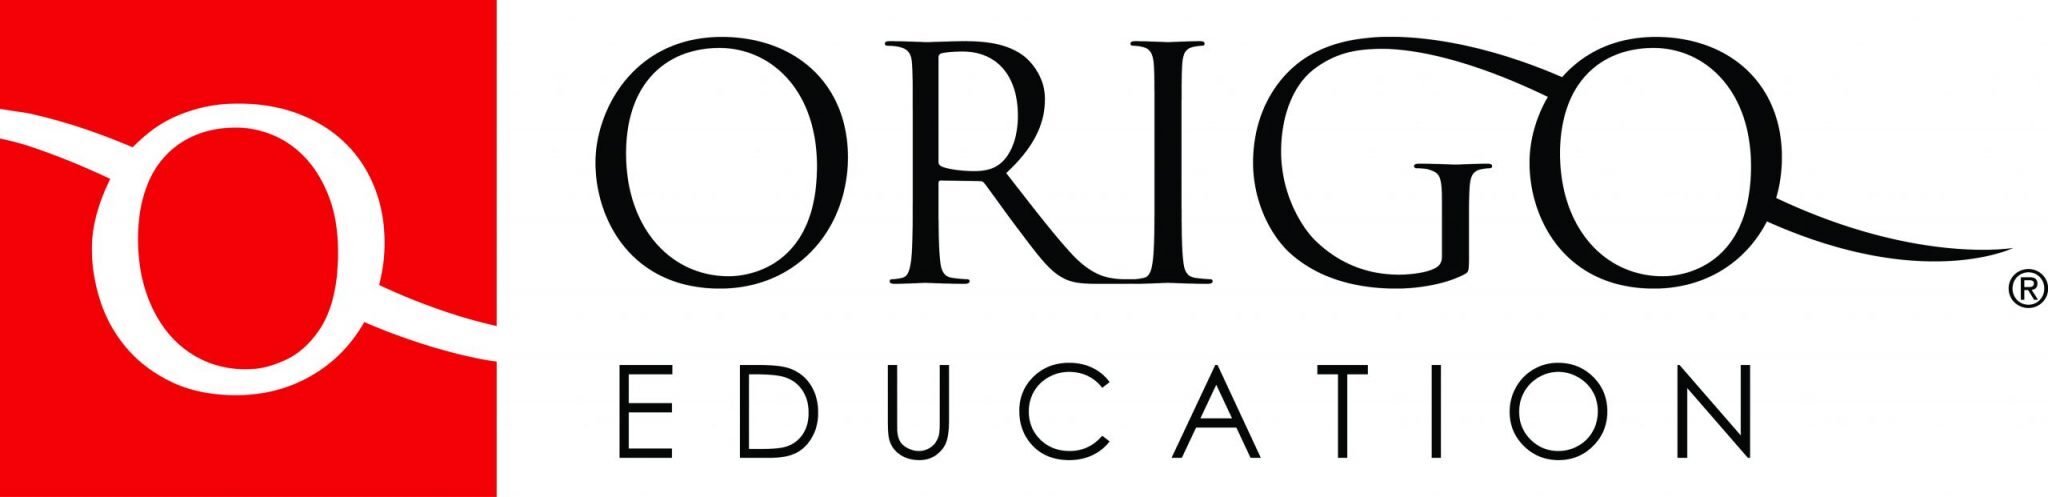 ORIGO_Education_Logo.jpg